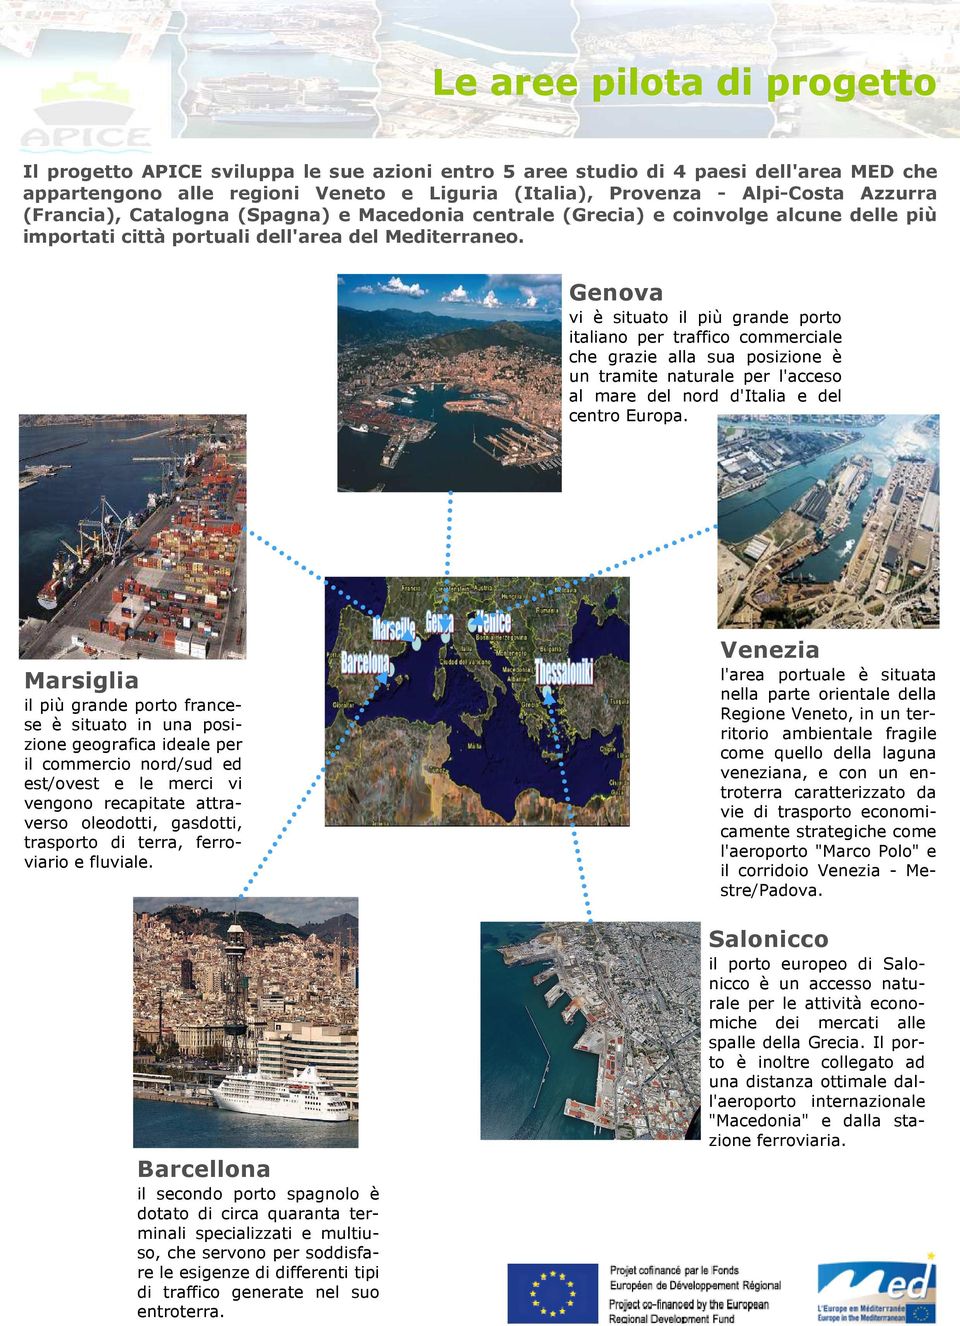 Genova vi è situato il più grande porto italiano per traffico commerciale che grazie alla sua posizione è un tramite naturale per l'acceso al mare del nord d'italia e del centro Europa.